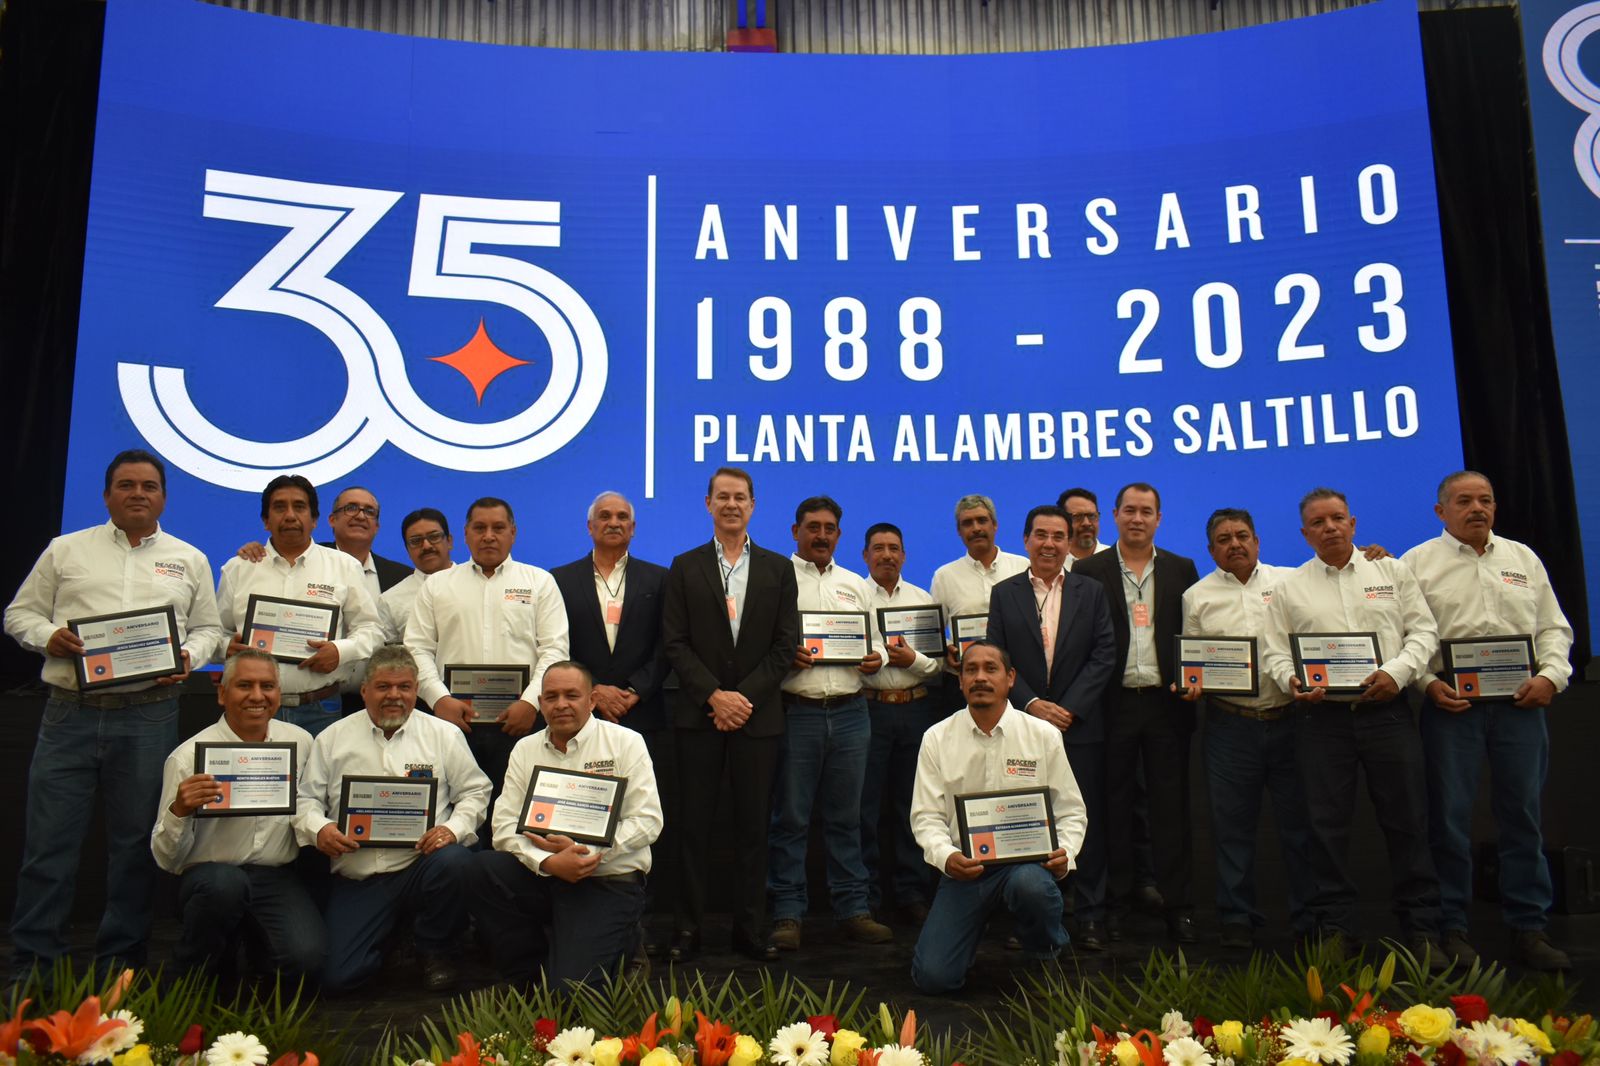 Grupo DEACERO celebra el 35 aniversario de la Planta de Alambres Saltillo